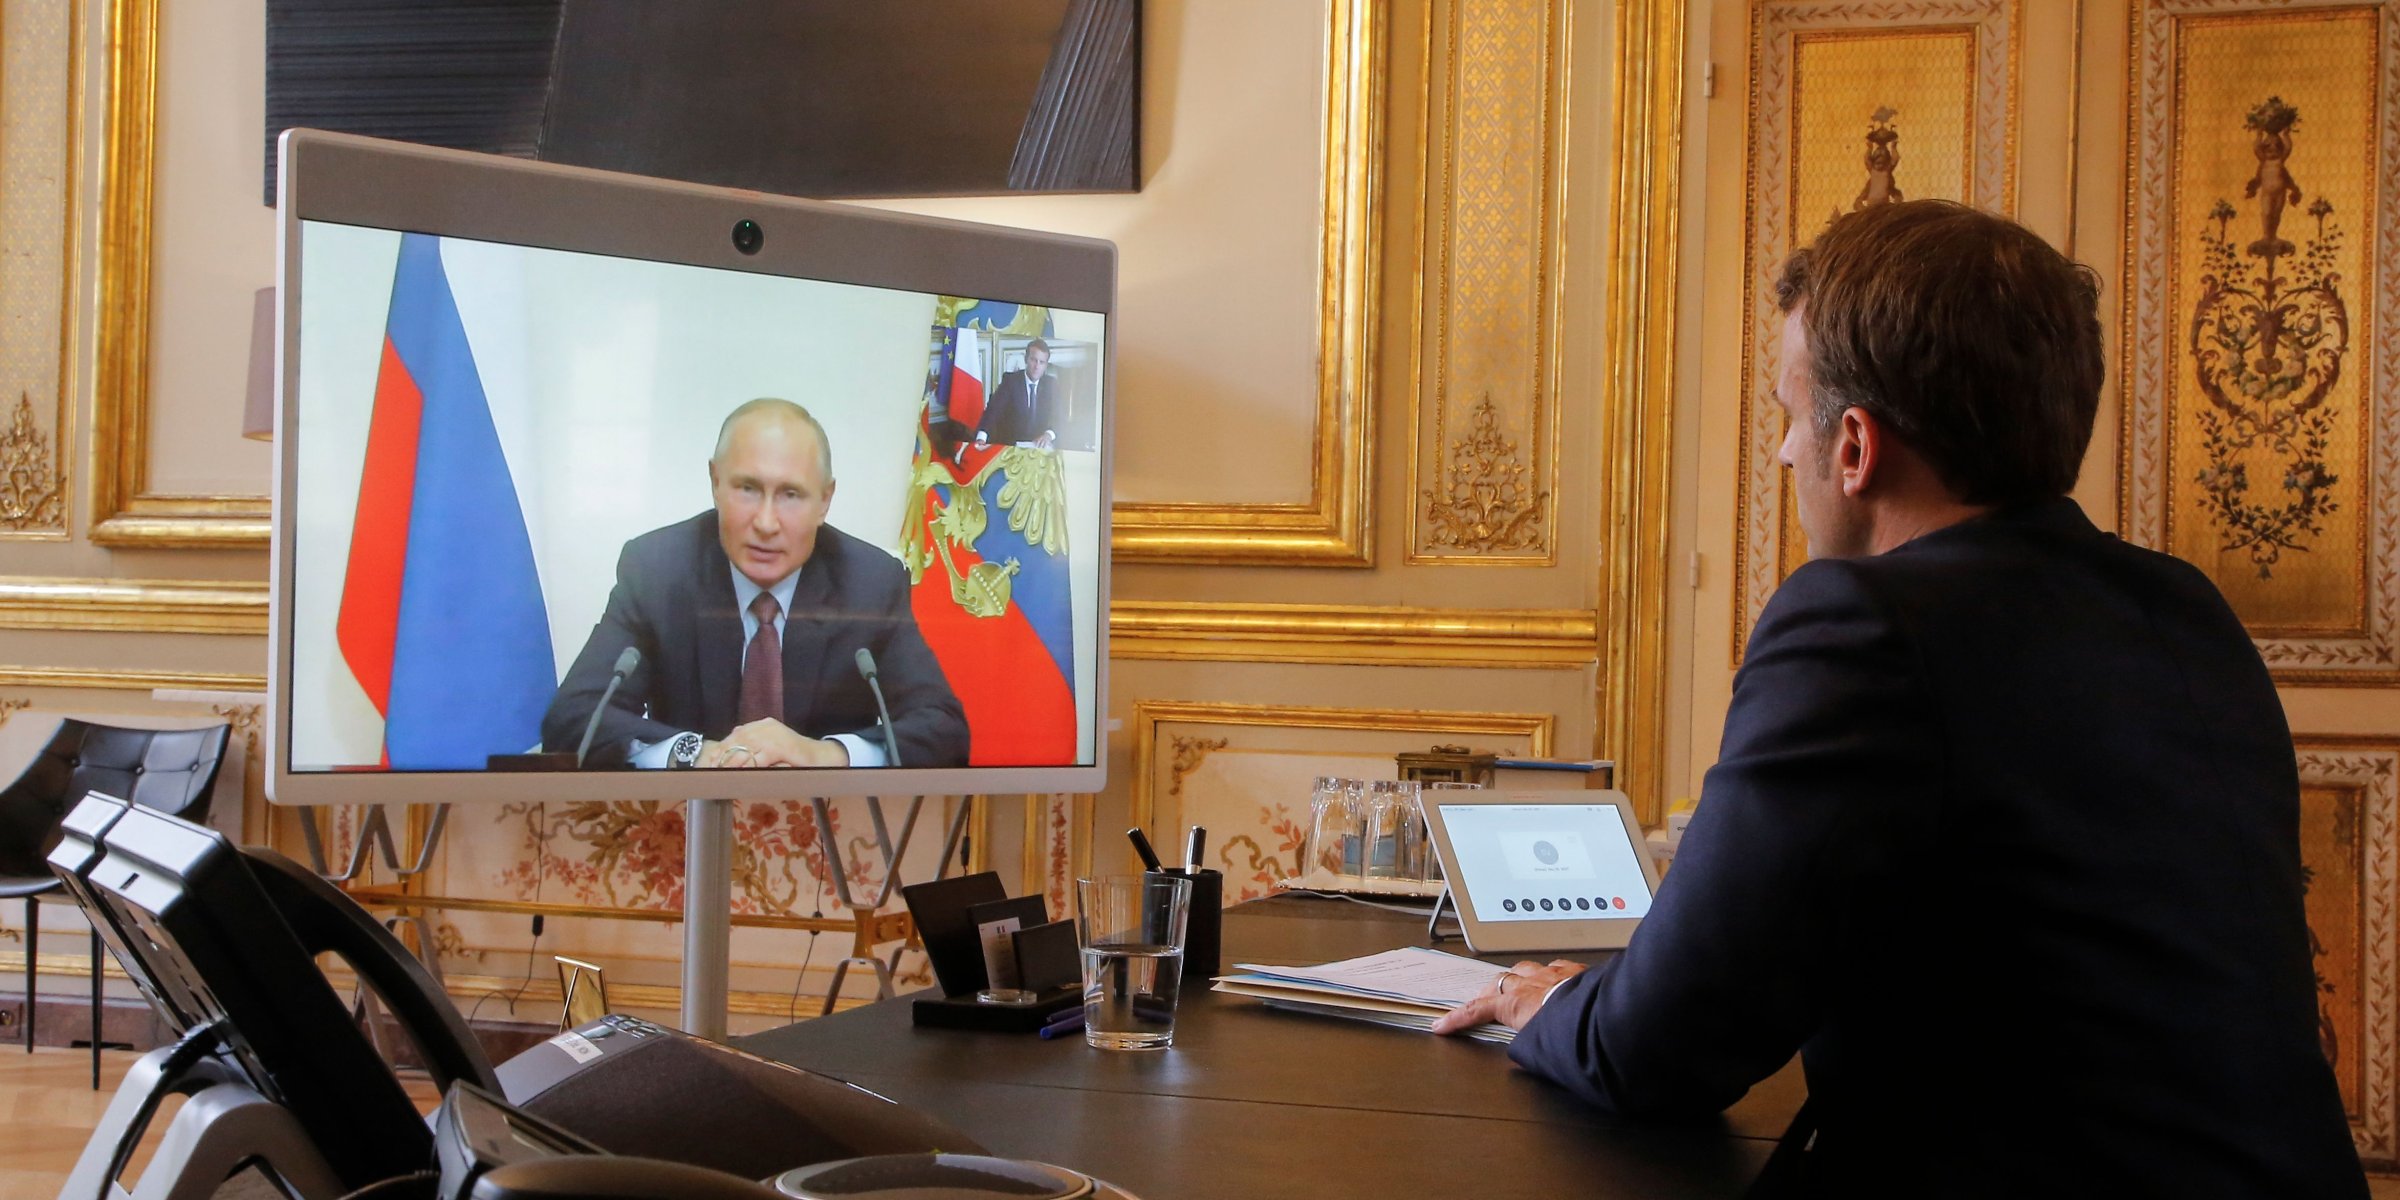 بوتين يؤكد لماكرون ضرورة تسوية مشاكل لبنان دون تدخل خارجي